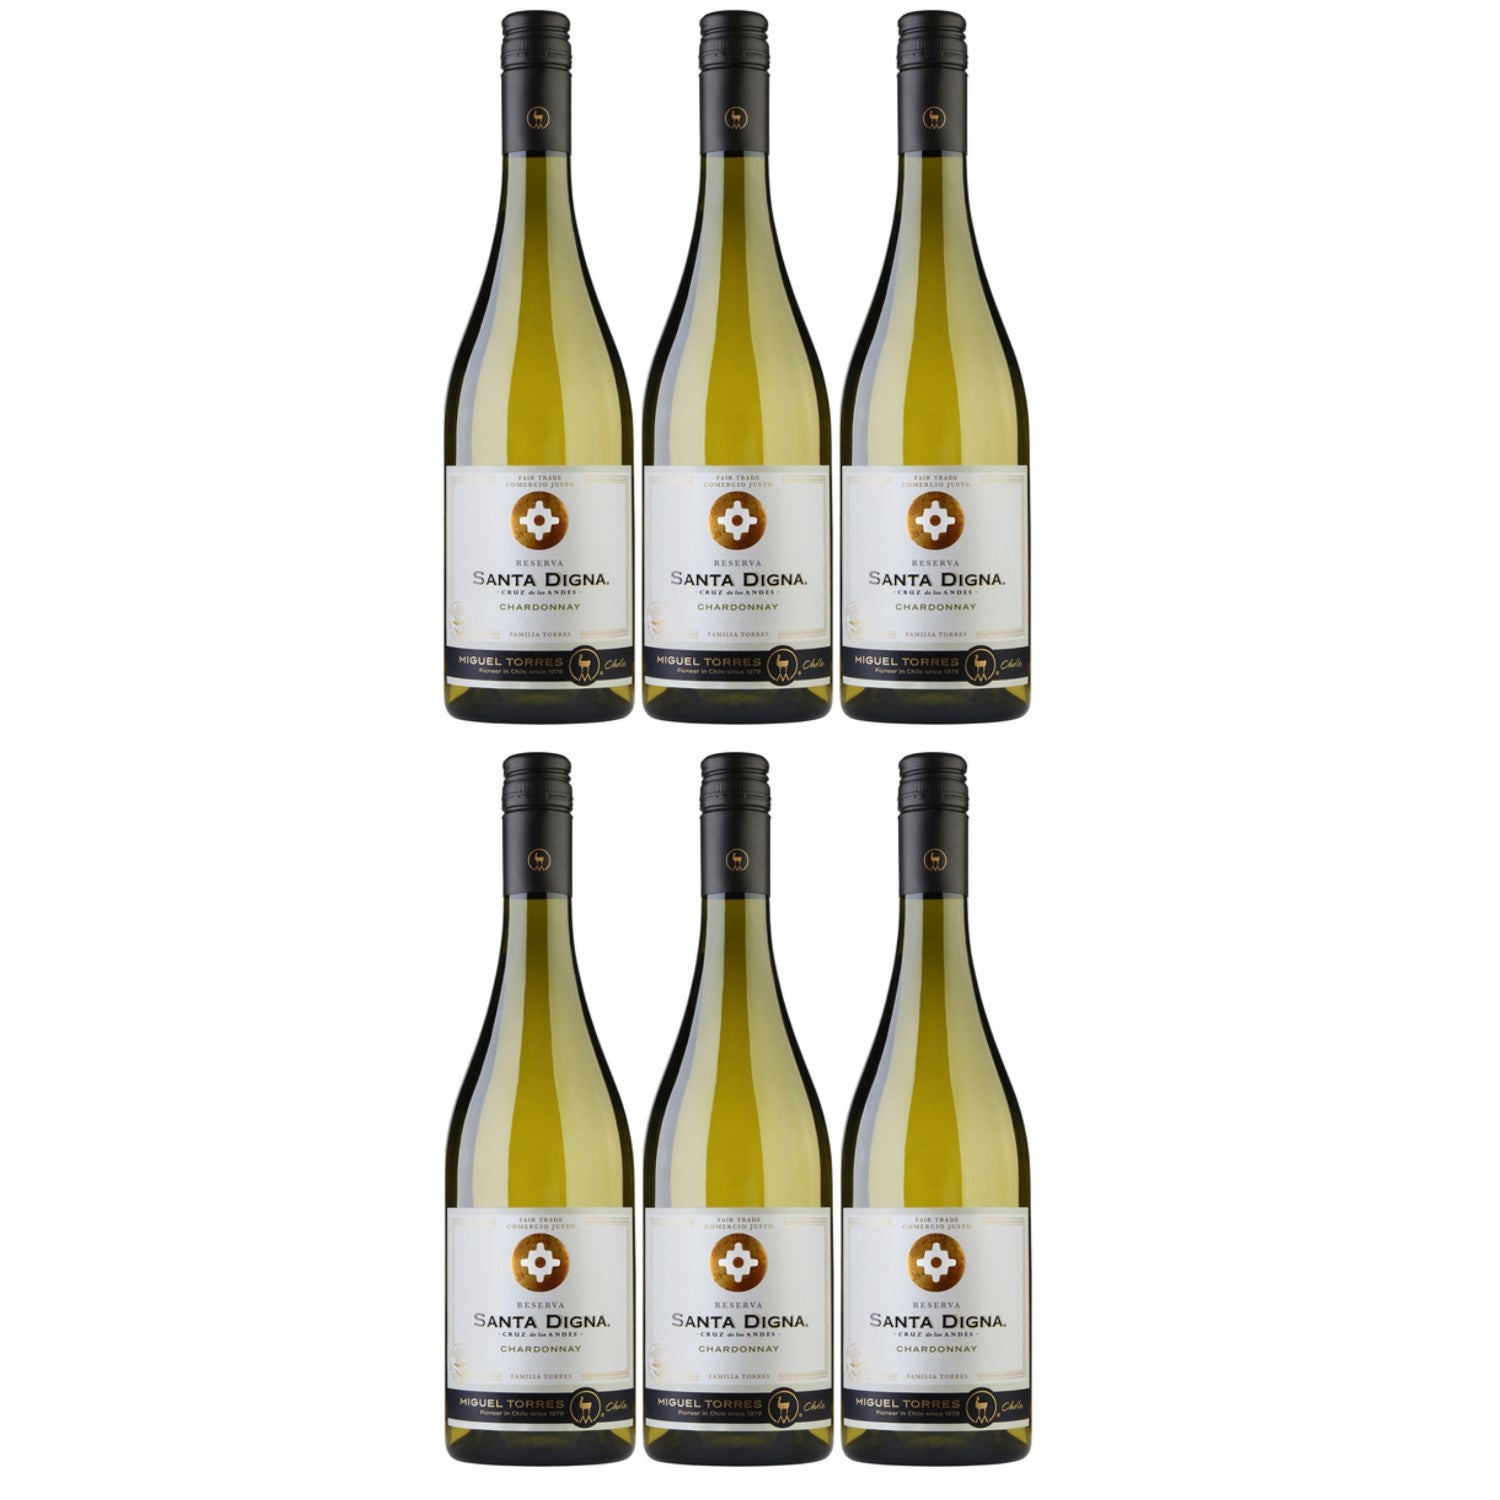 Miguel Torres Santa Digna Reserva Chardonnay Weißwein Wein Halbtrocken Chile (6 x 0.75l) - Versanel -